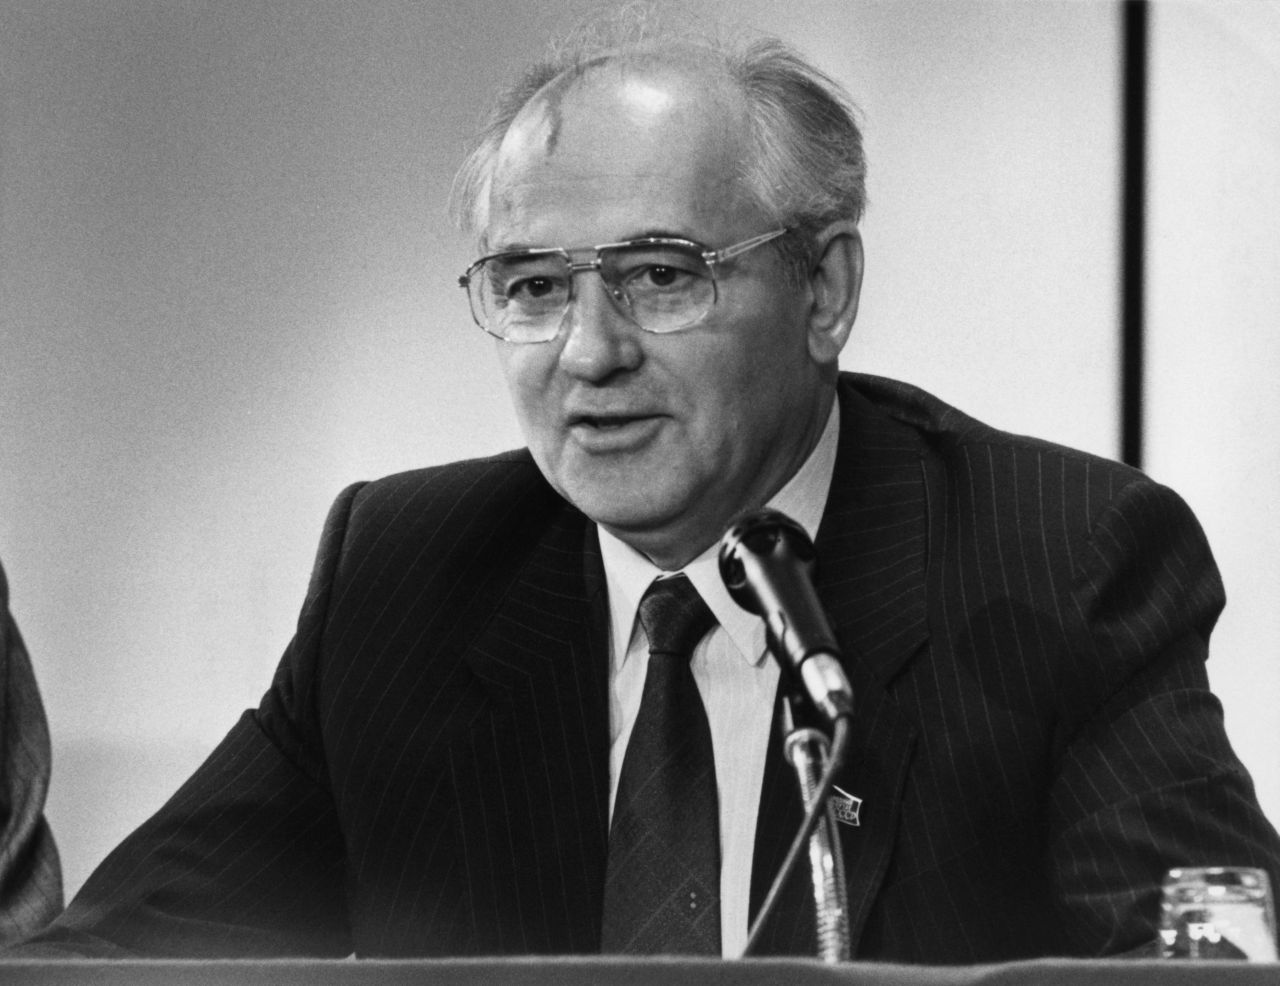 Foto von Michail Gorbatschow, sowjet. Politiker (Generalsekretär des ZK der KPdSU, Vorsitzender des Präsidiums des Obersten Sowjets der UdSSR), während einer Ansprache um 1990